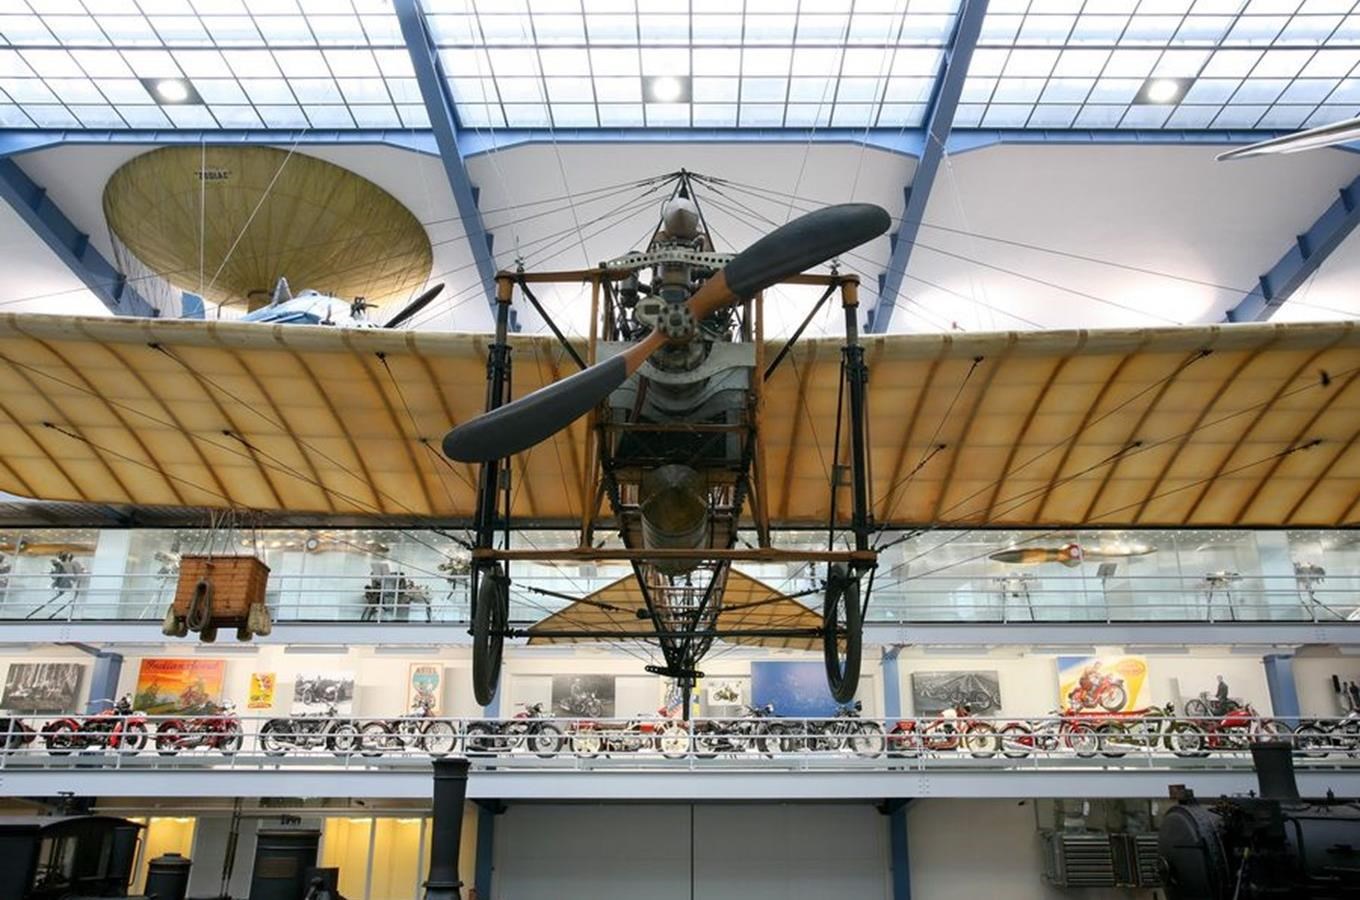 Národní technické muzeum Praha – ráj exponátů z oblasti vědy a techniky